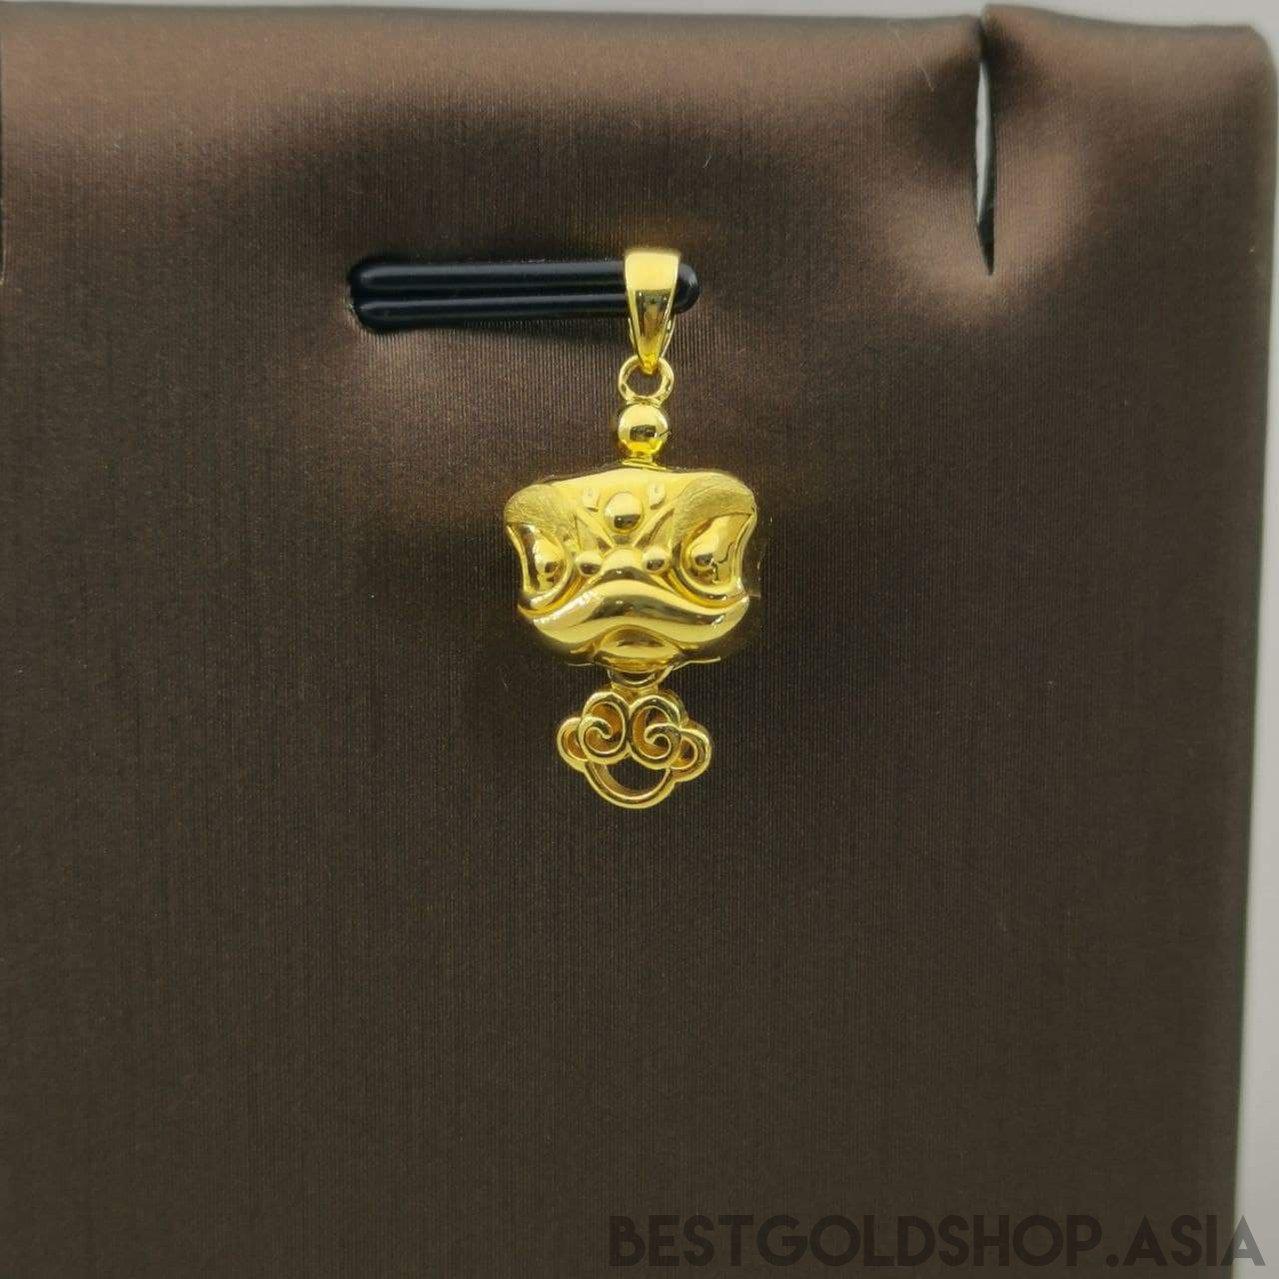 22k / 916 Gold Lion Dance Pendant-Charms & Pendants-Best Gold Shop